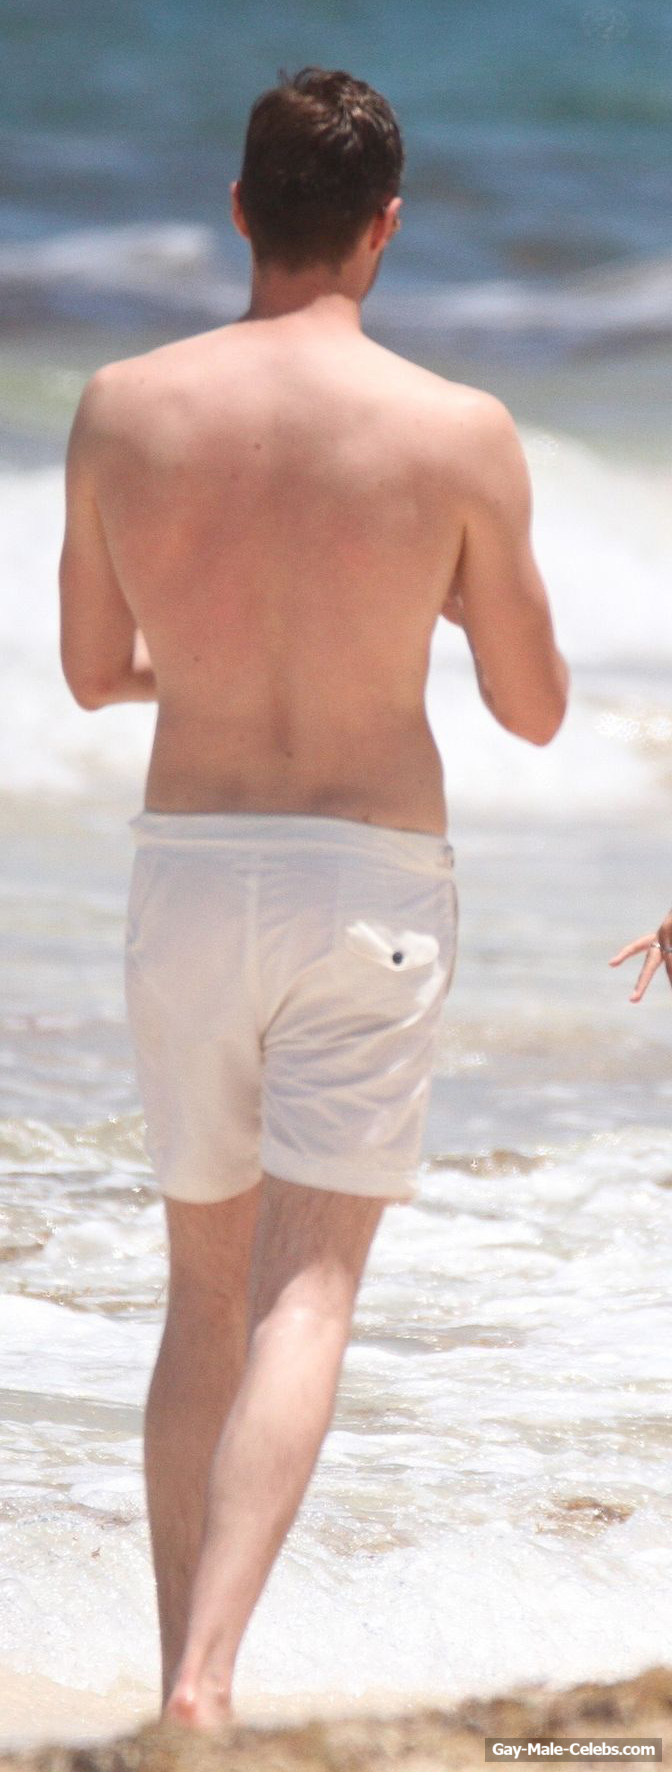 Jim Chapman Paparazzi Shirtless Beach Photos